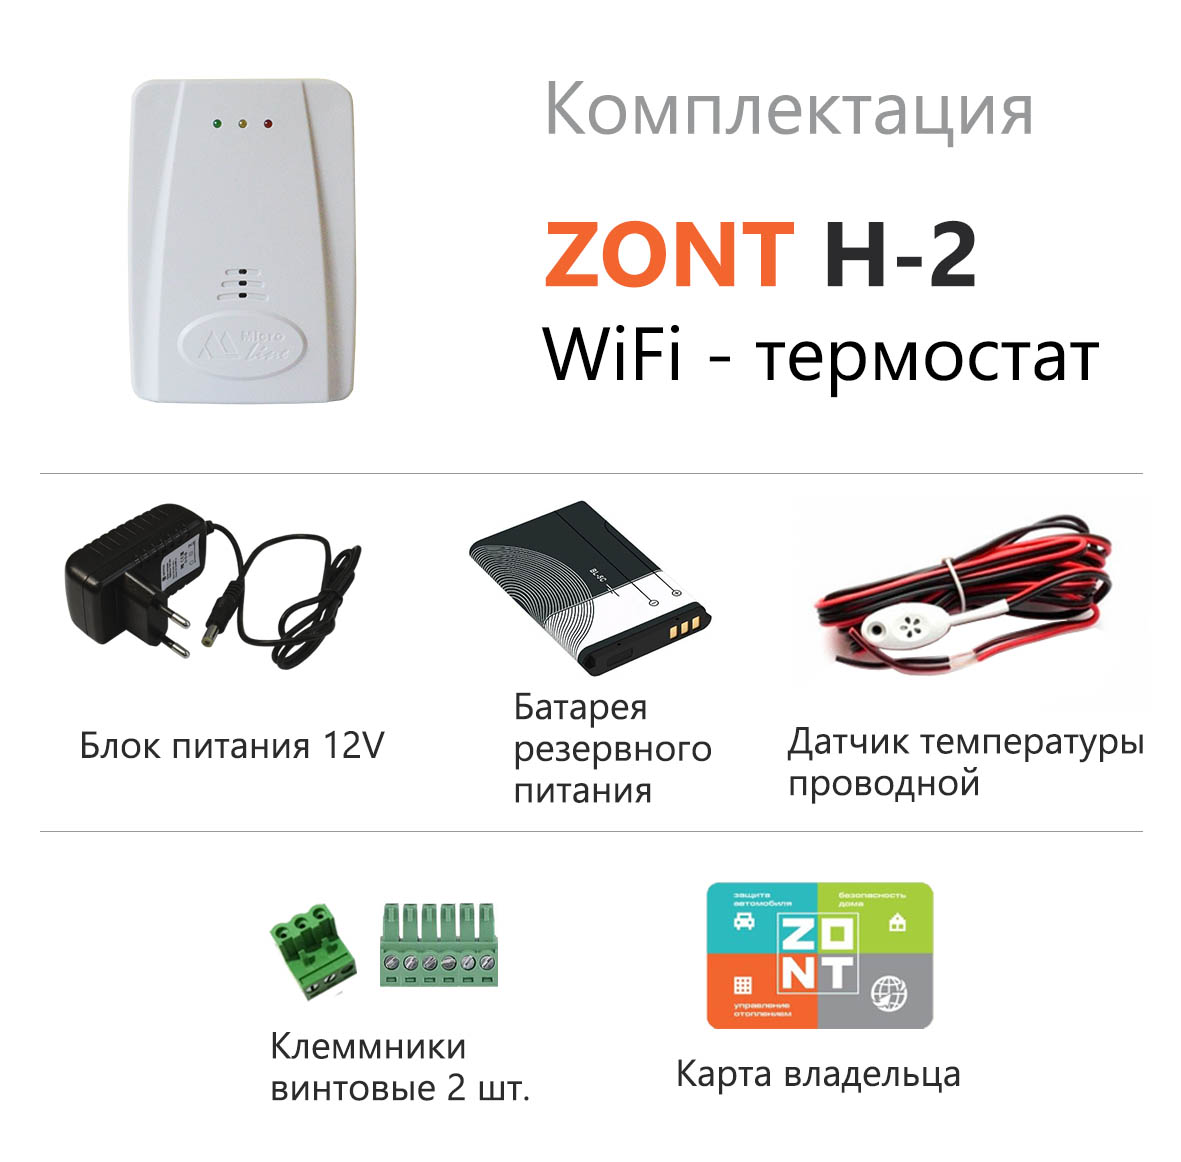 Wi-Fi термостат ZONT H-2 